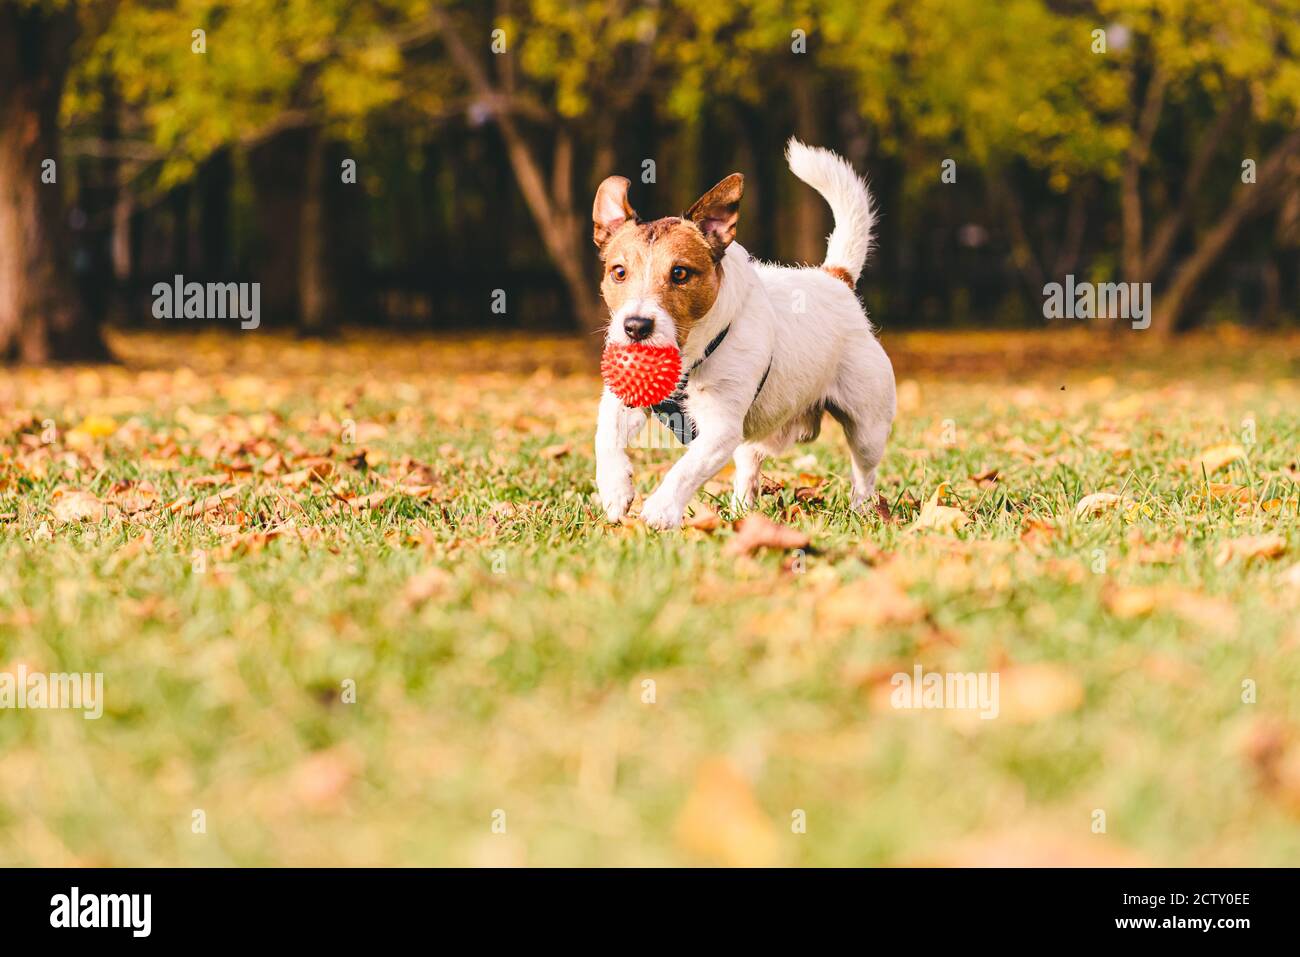 Par temps ensoleillé et chaud, le jour de l'automne, le chien joue Avec balle de jouet sur la pelouse du parc le jour de septembre Banque D'Images